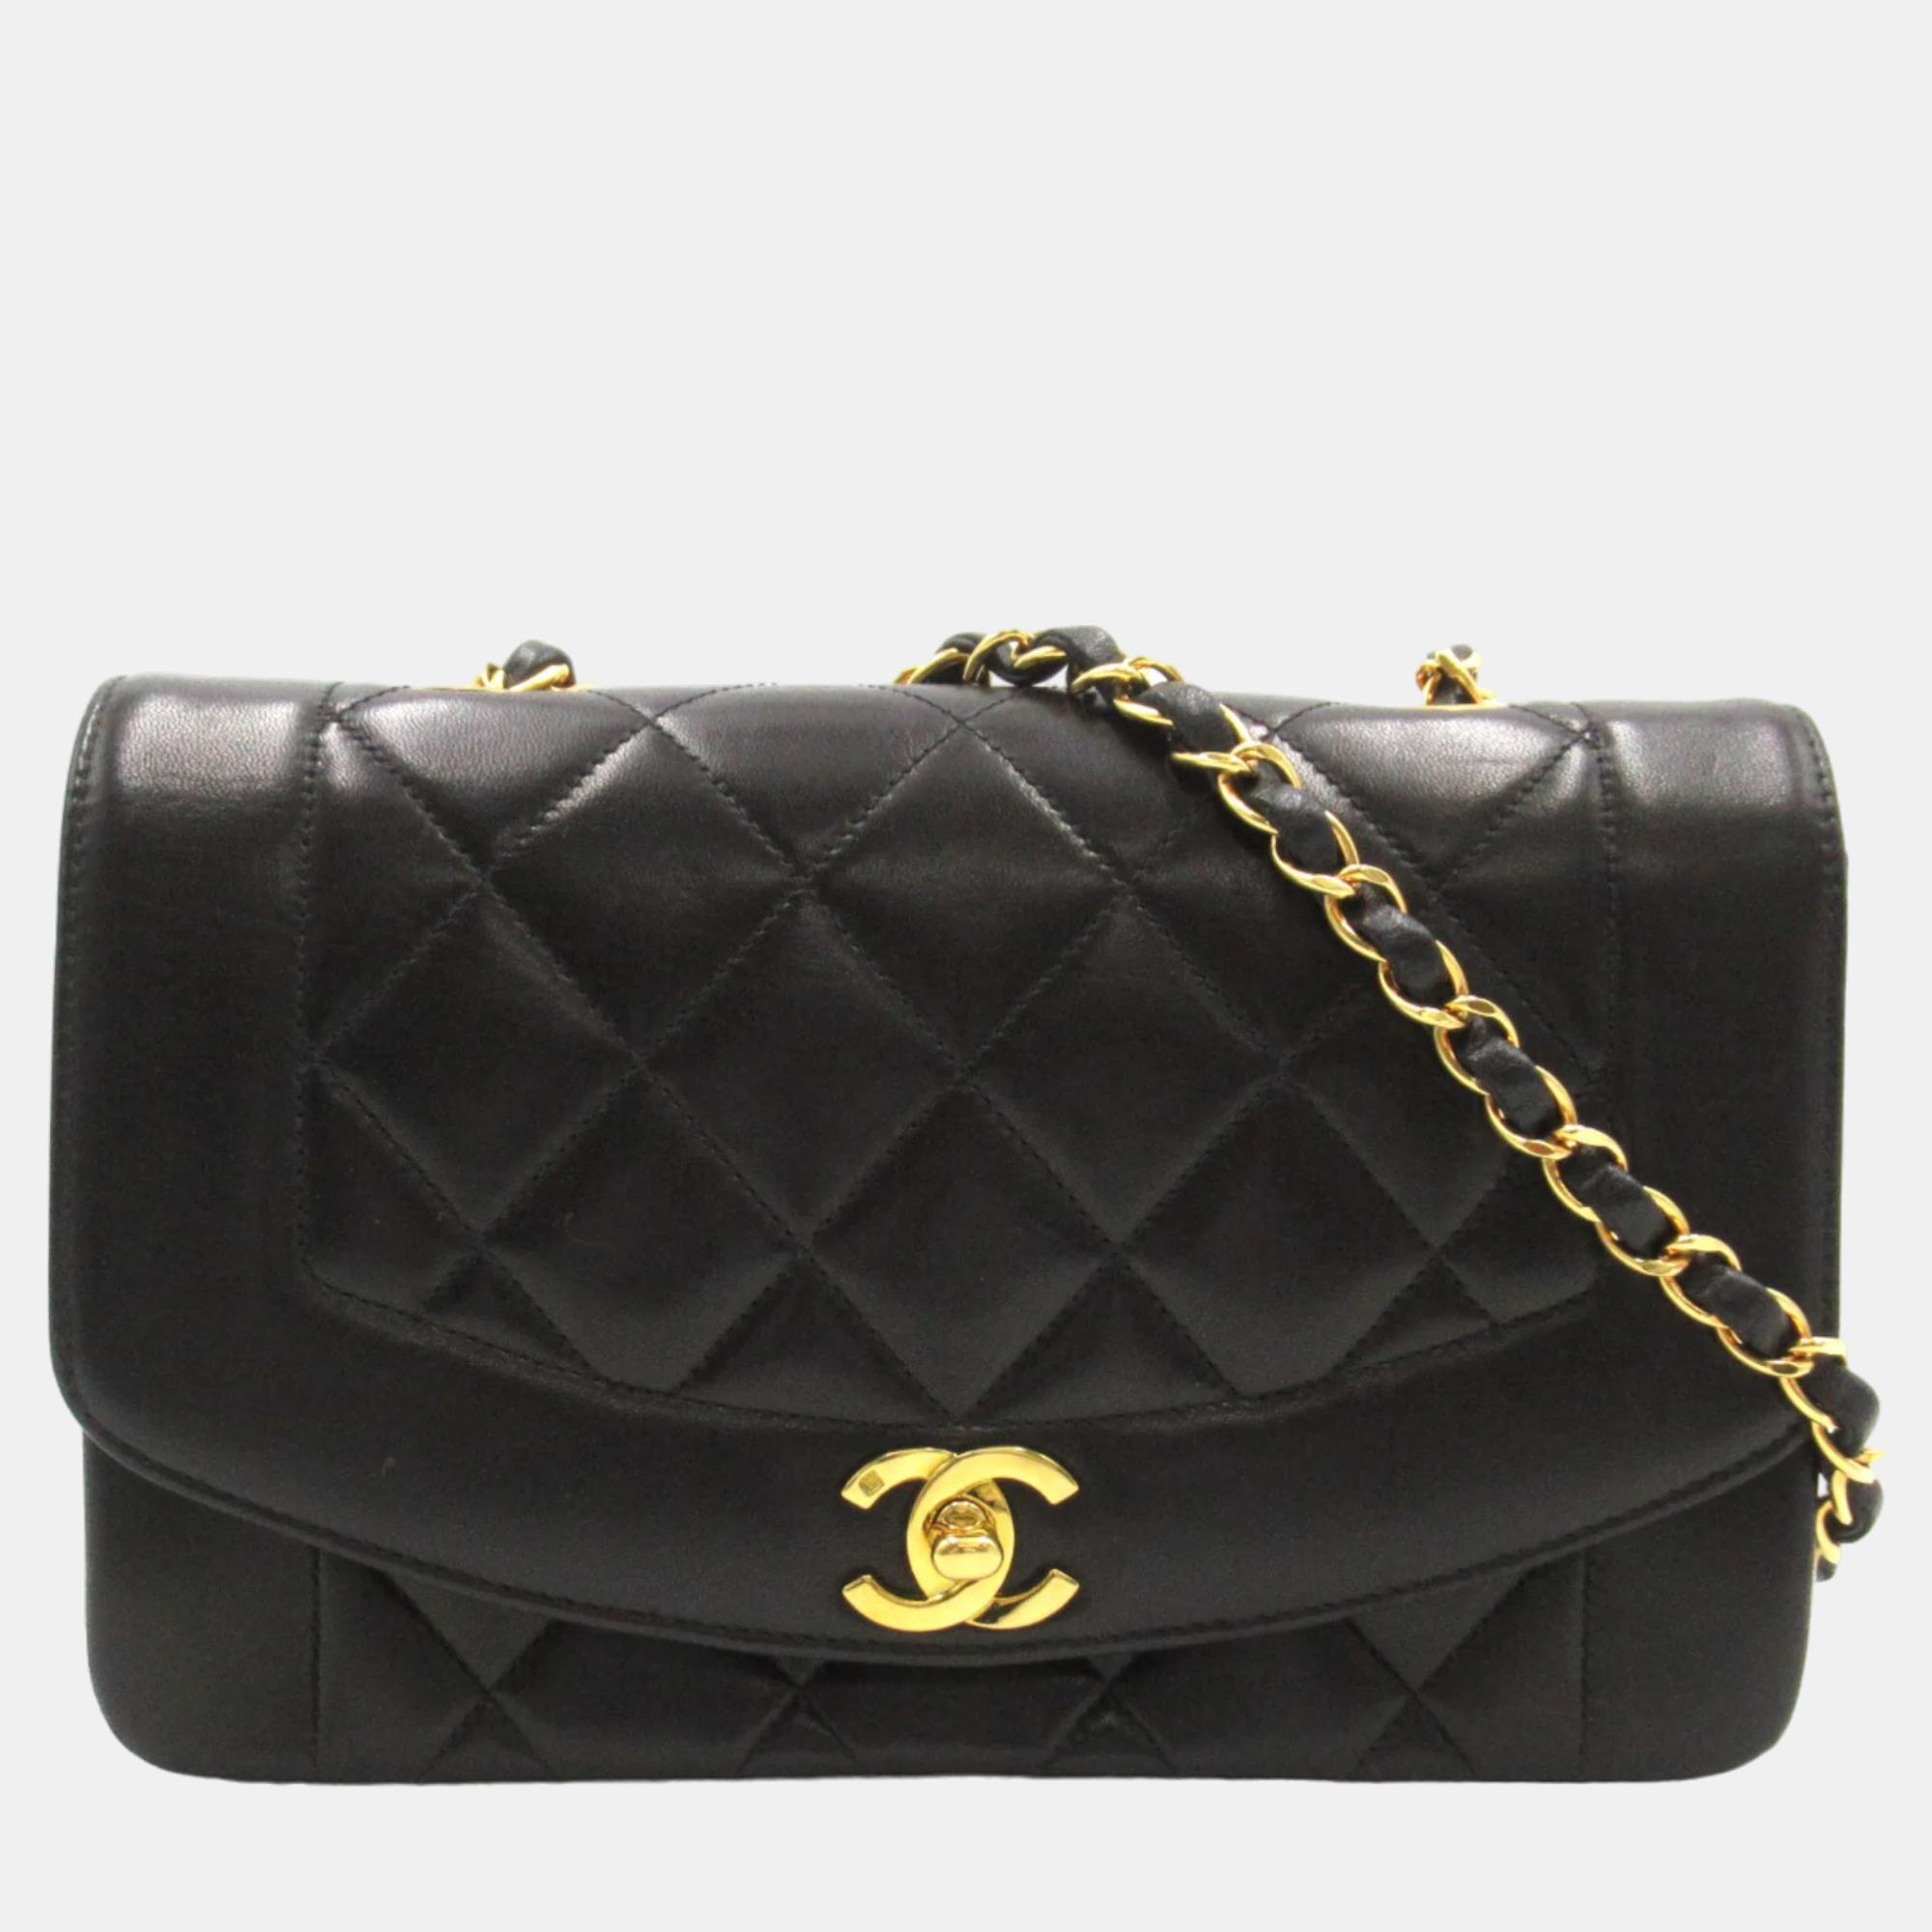 

Chanel Black Leather Vintage Diana Flap Shoulder Bag